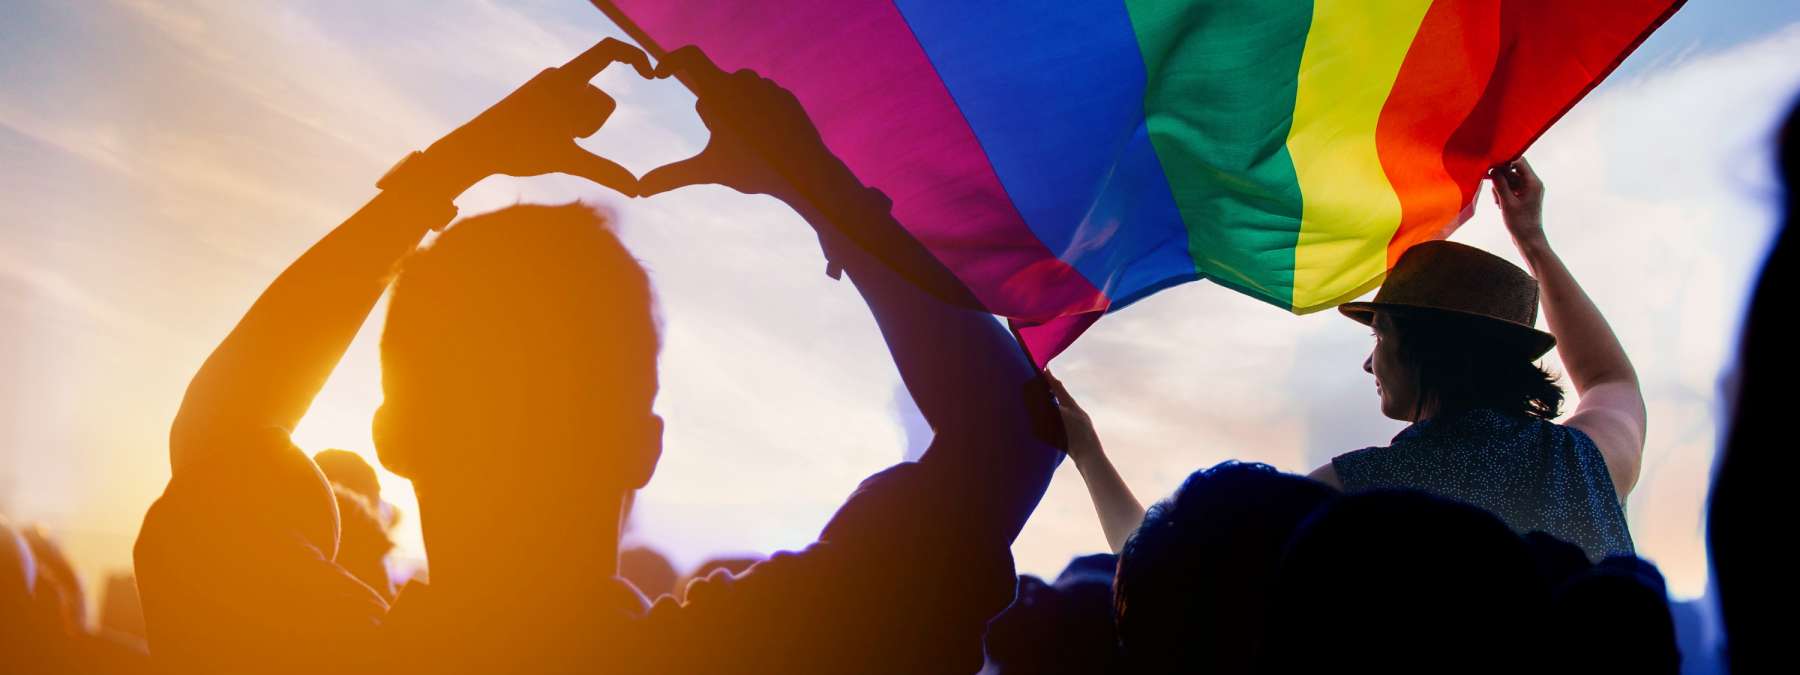 PINAKAMAHUSAY NA GAY DATING SITES SOUTH AFRICA